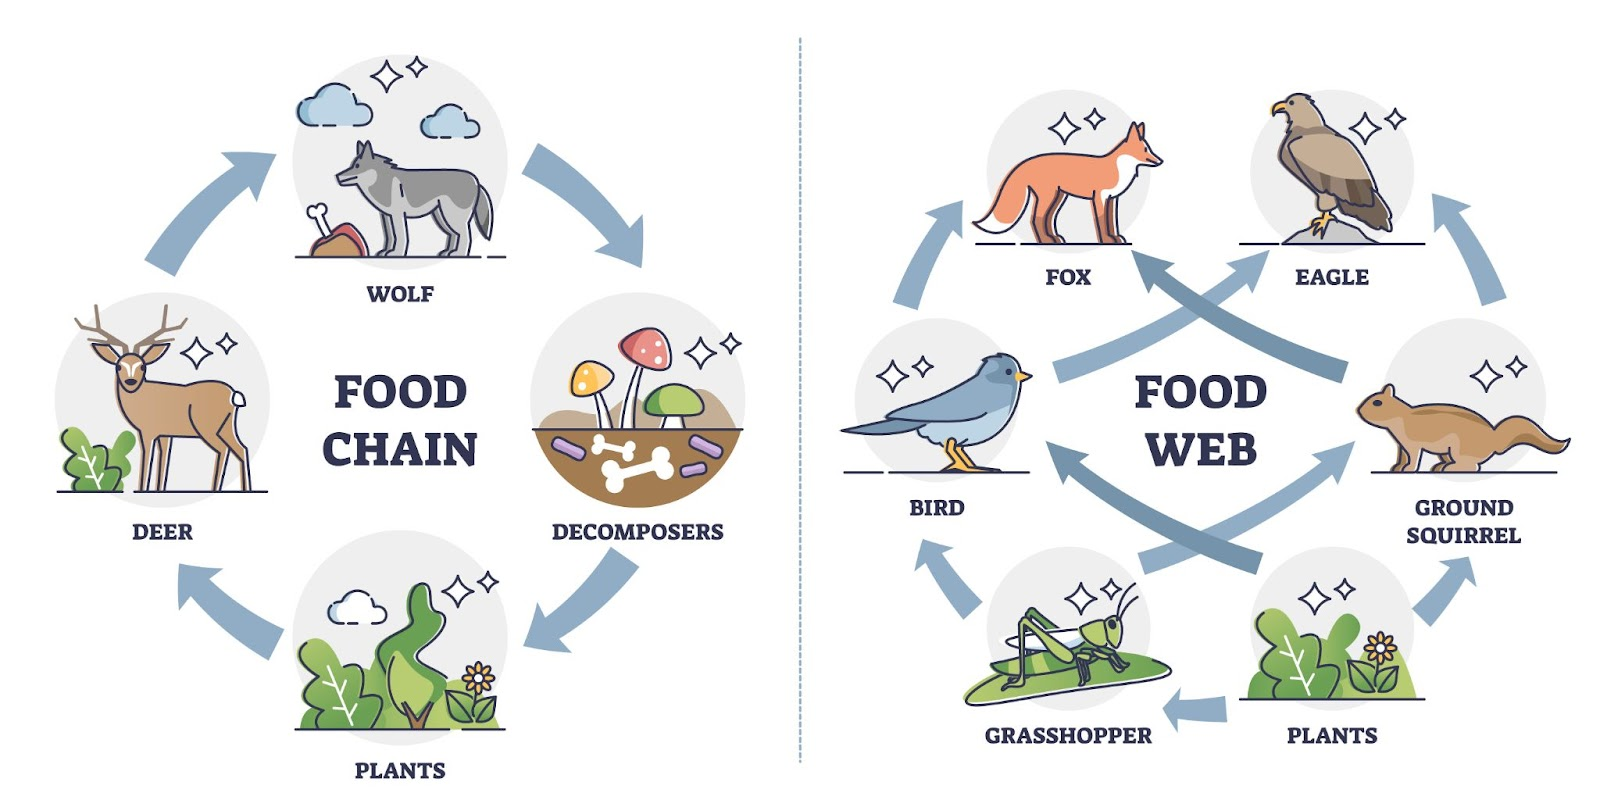 food chain vs food web